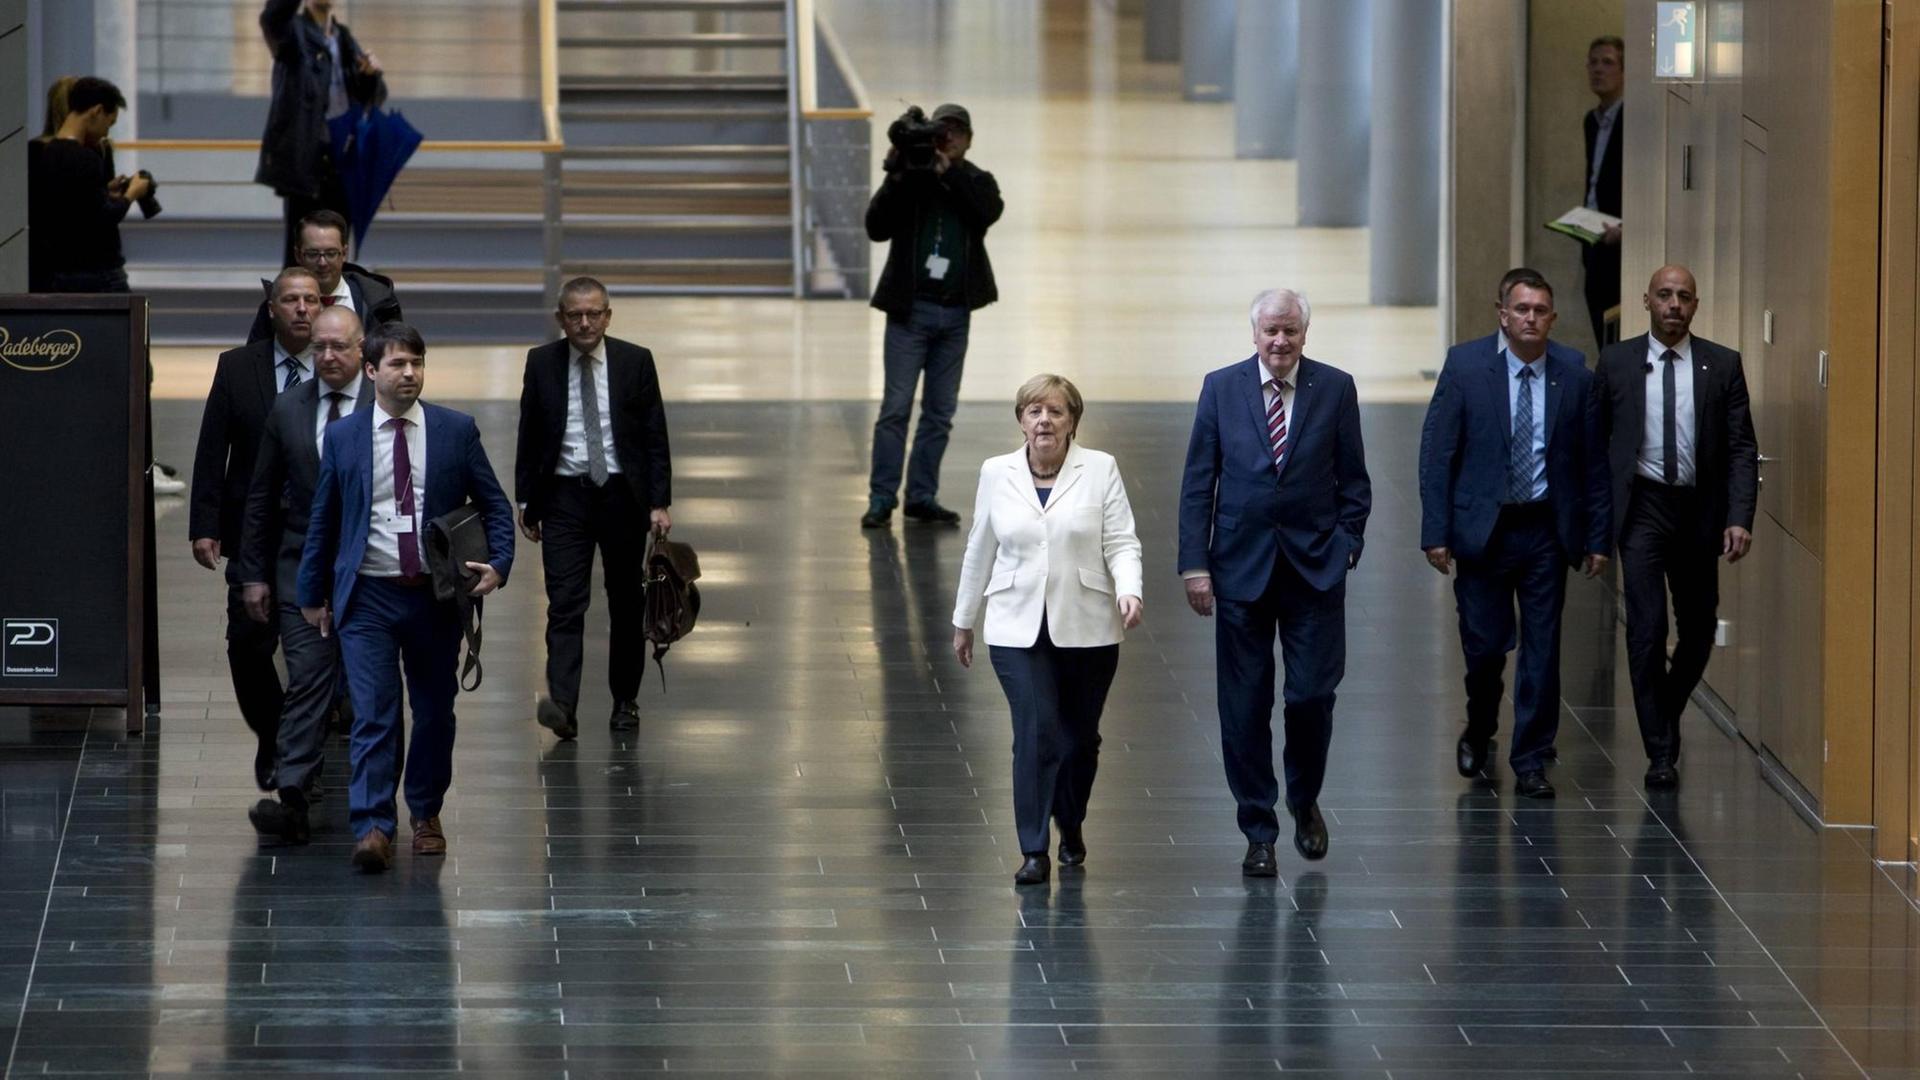 Angela Merkel und Horst Seehofer bei den Sondierungsgesprächen zur Regierungsbildung nach der Bundestagswahl zwischen CDU/CSU, FDP und B90/Grüne